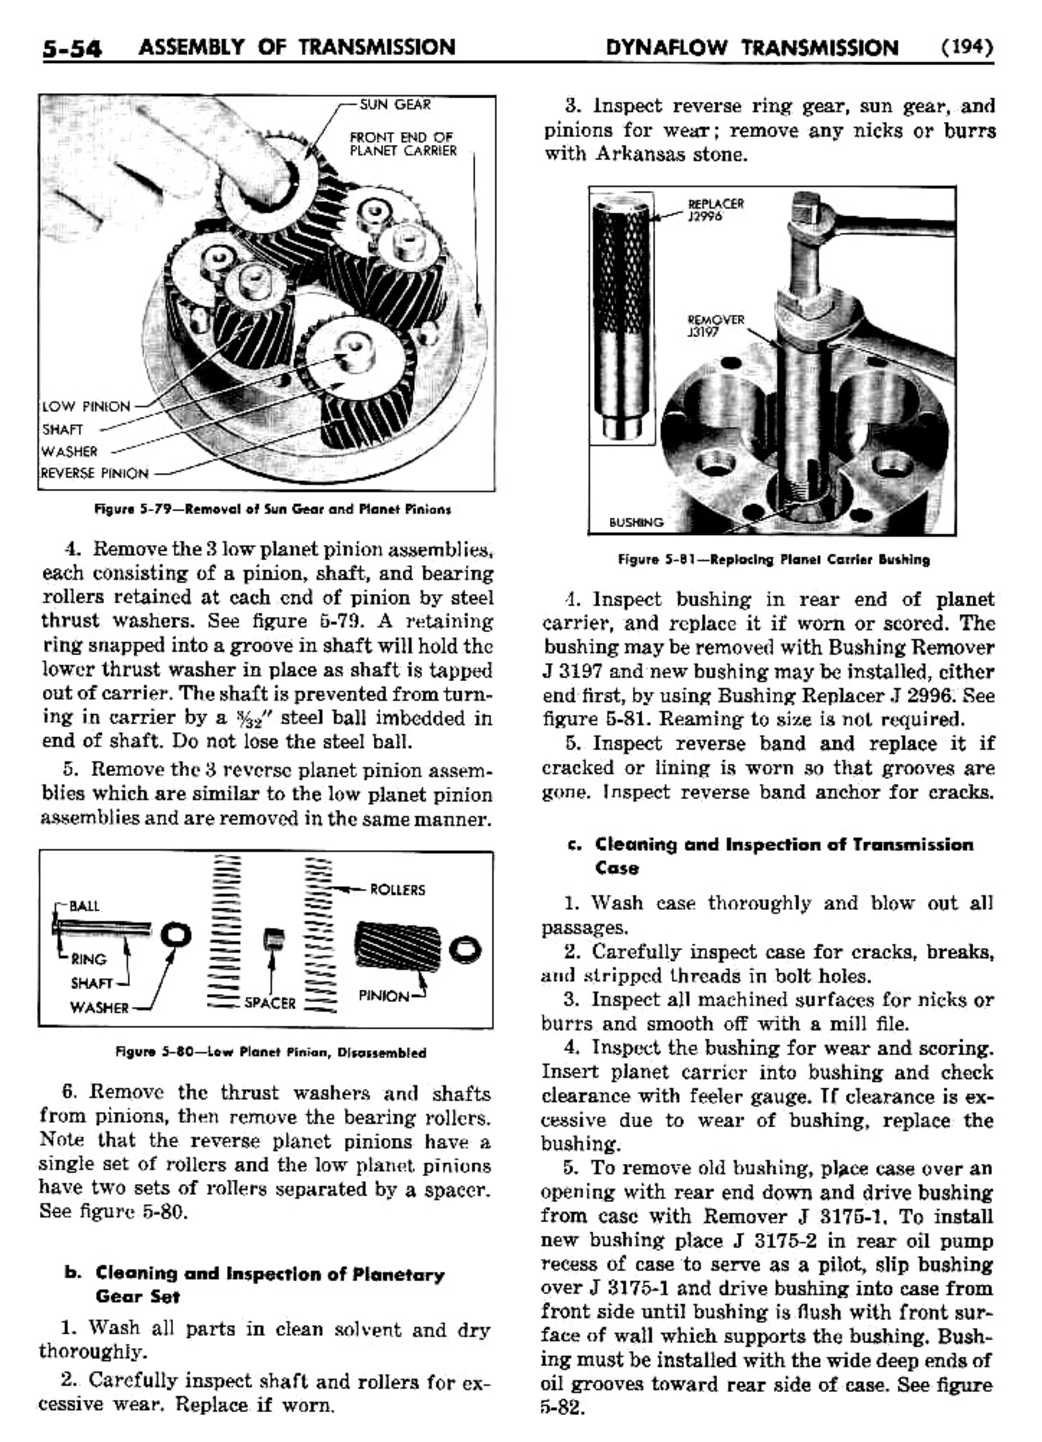 n_06 1955 Buick Shop Manual - Dynaflow-054-054.jpg